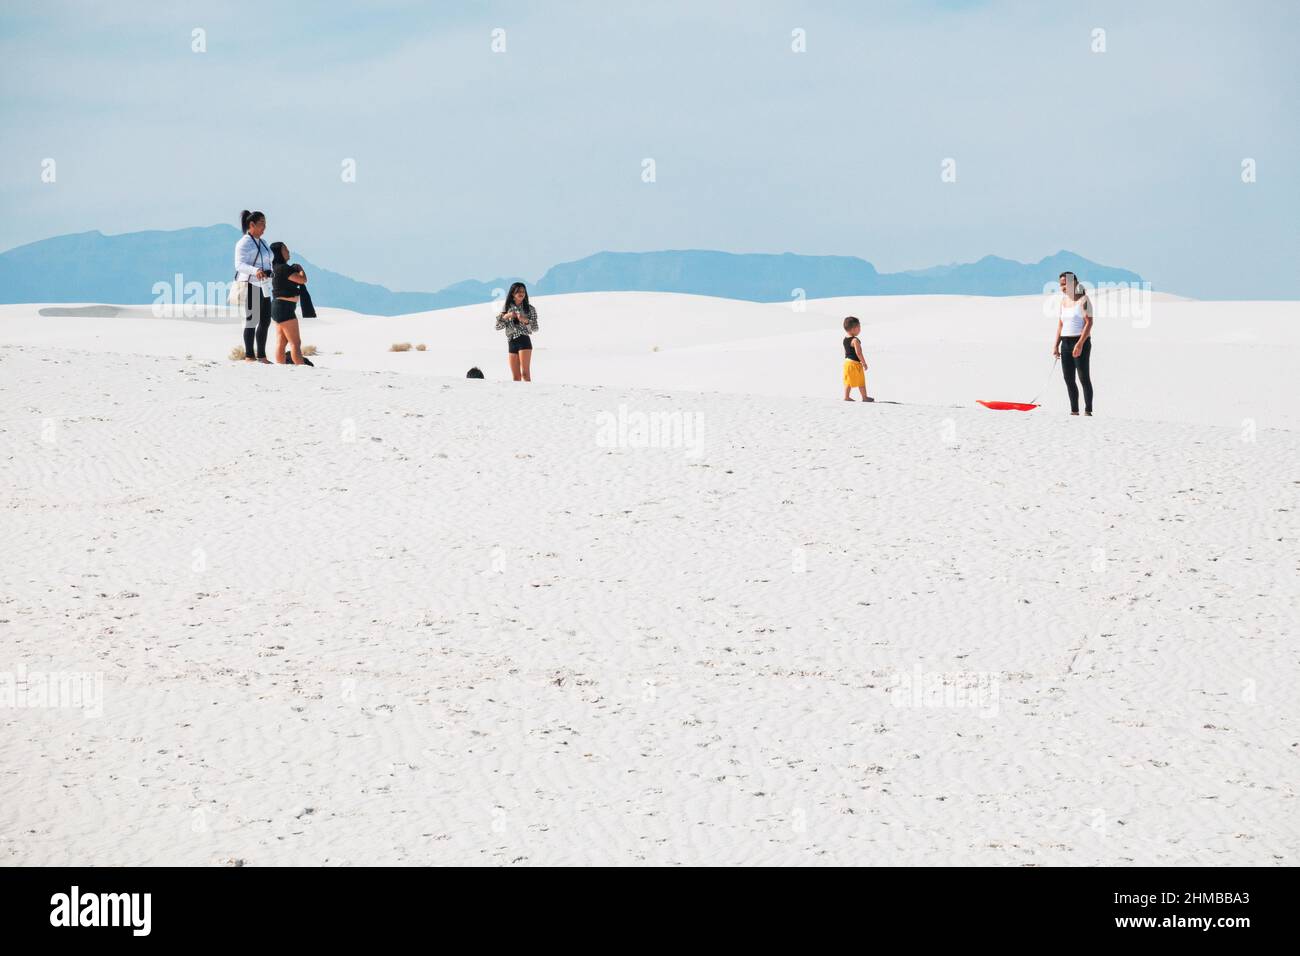 Une famille joue dans les dunes de sable du parc national de White Sands, au Nouveau-Mexique, aux États-Unis Banque D'Images